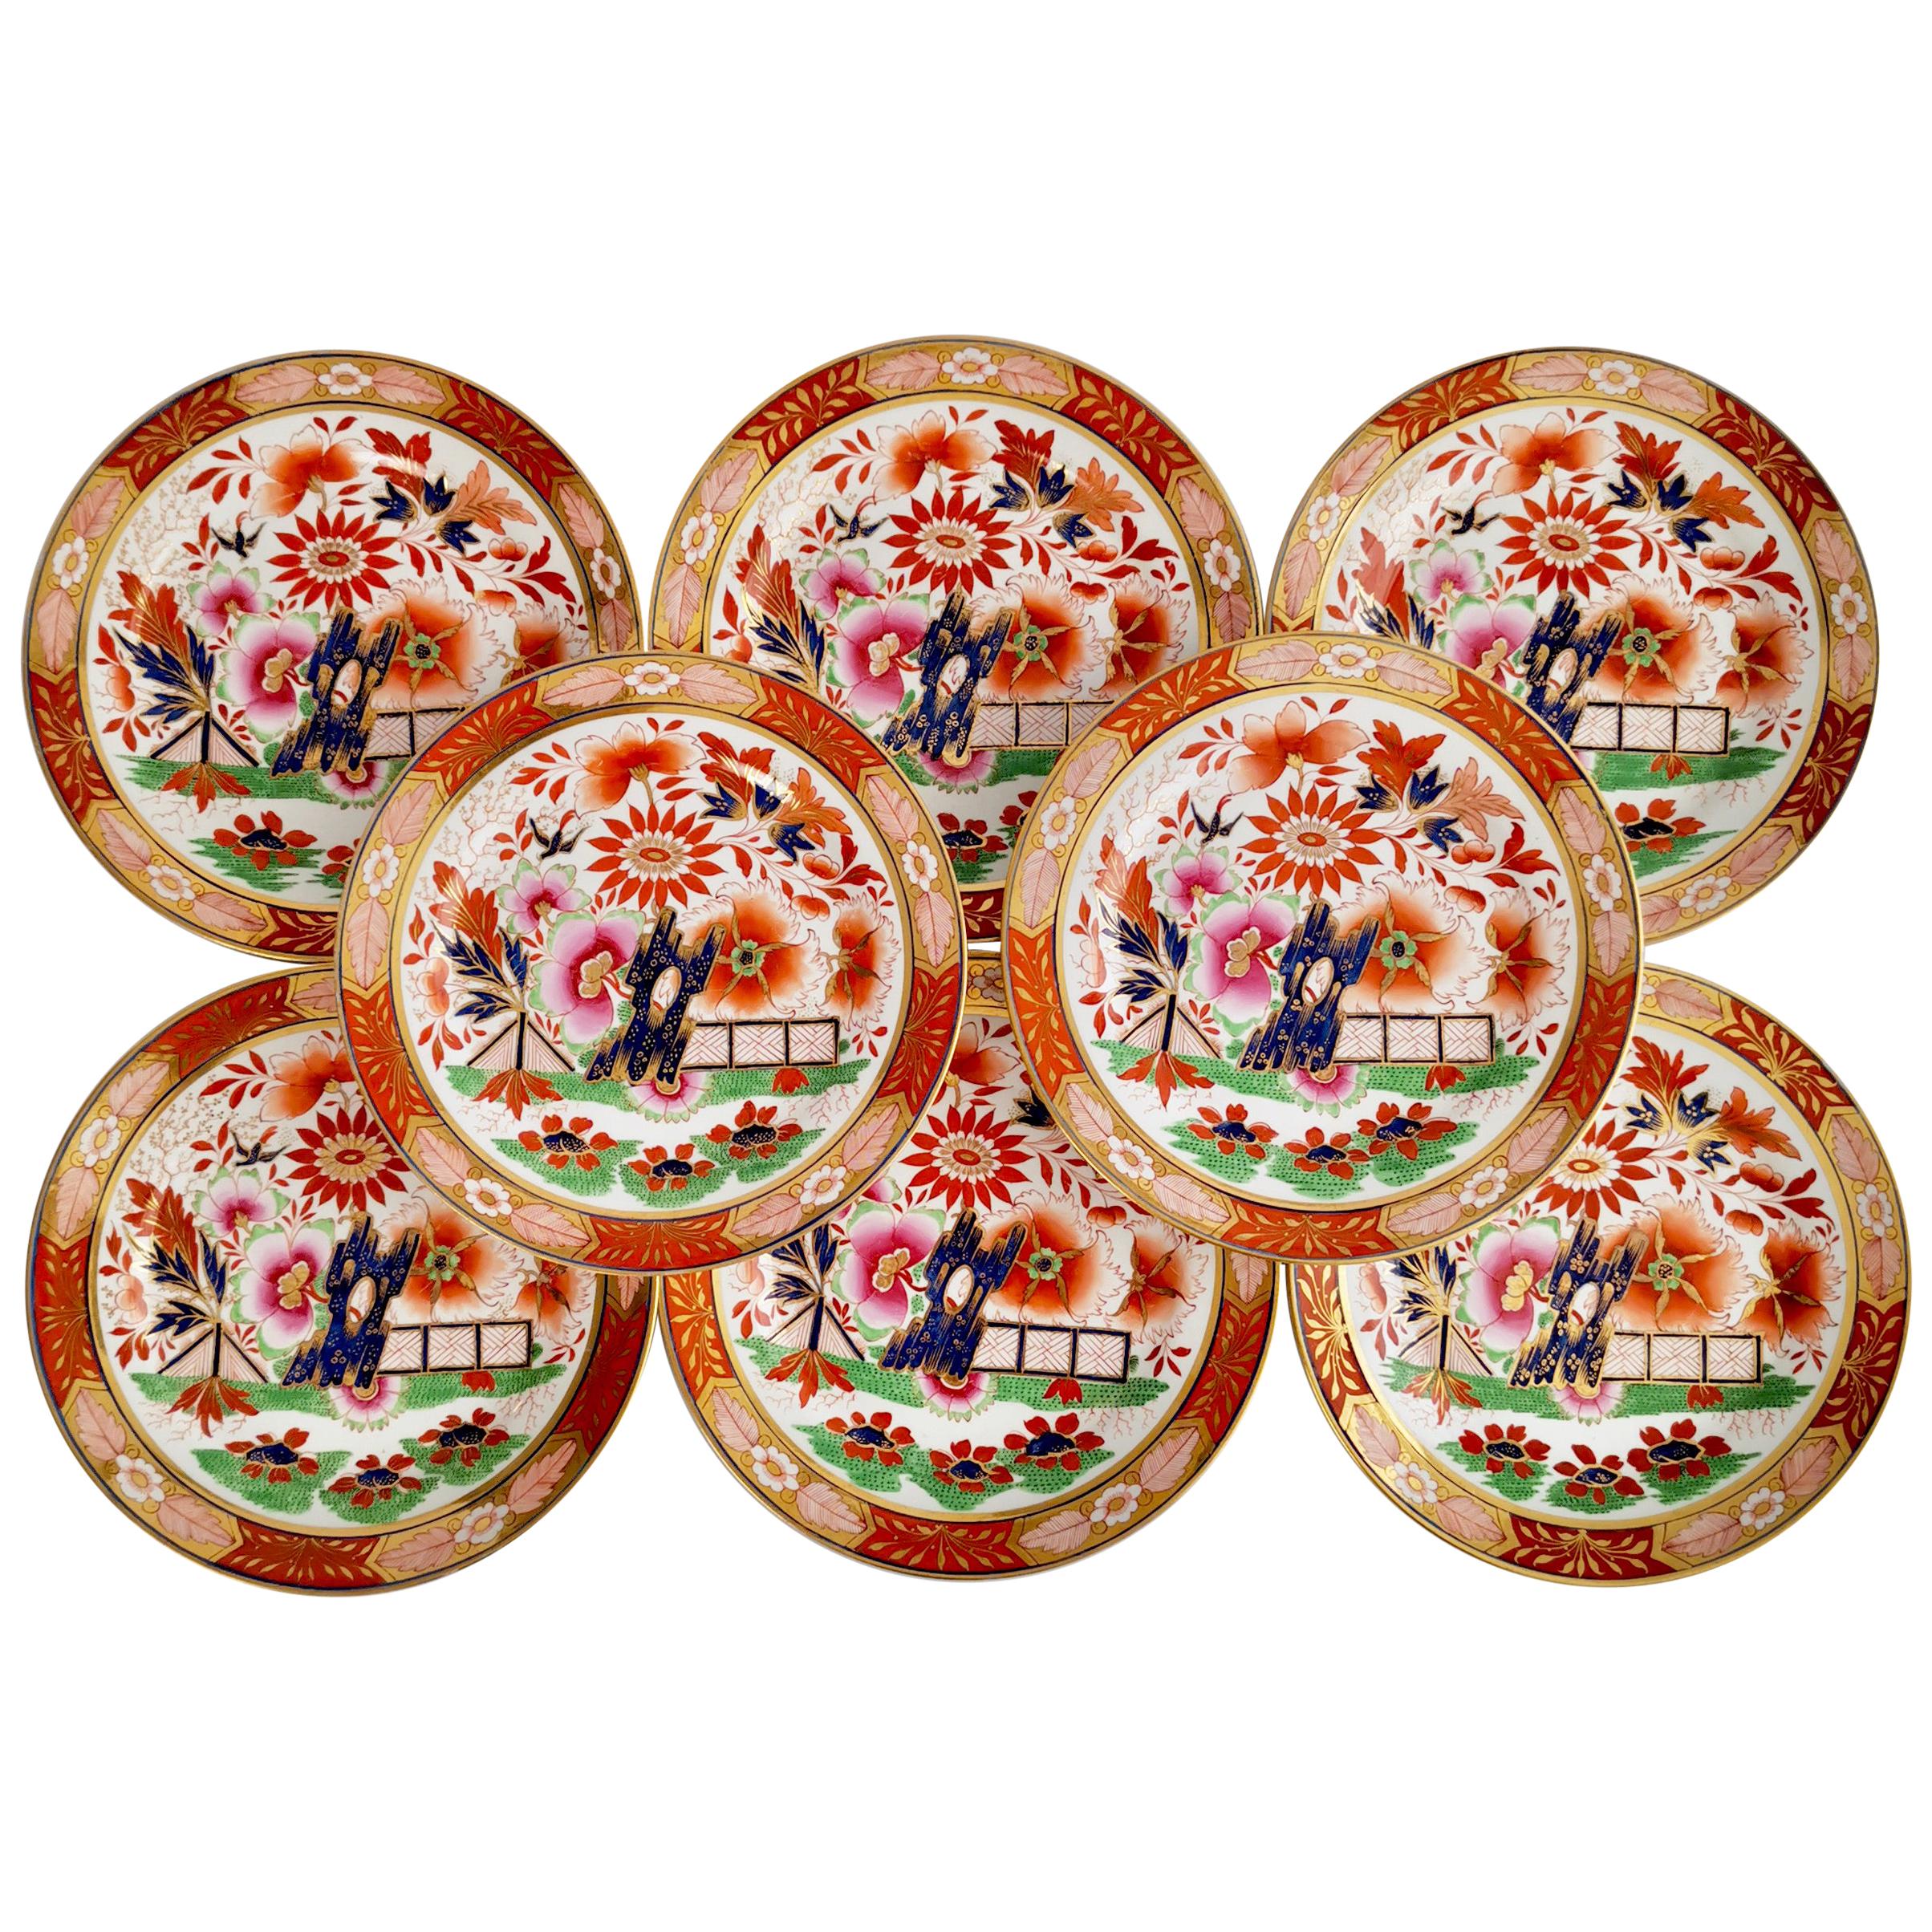 Set of 8 Barr Flight & Barr Porcelain Plates, Imari Fence, Regency, 1811-1813